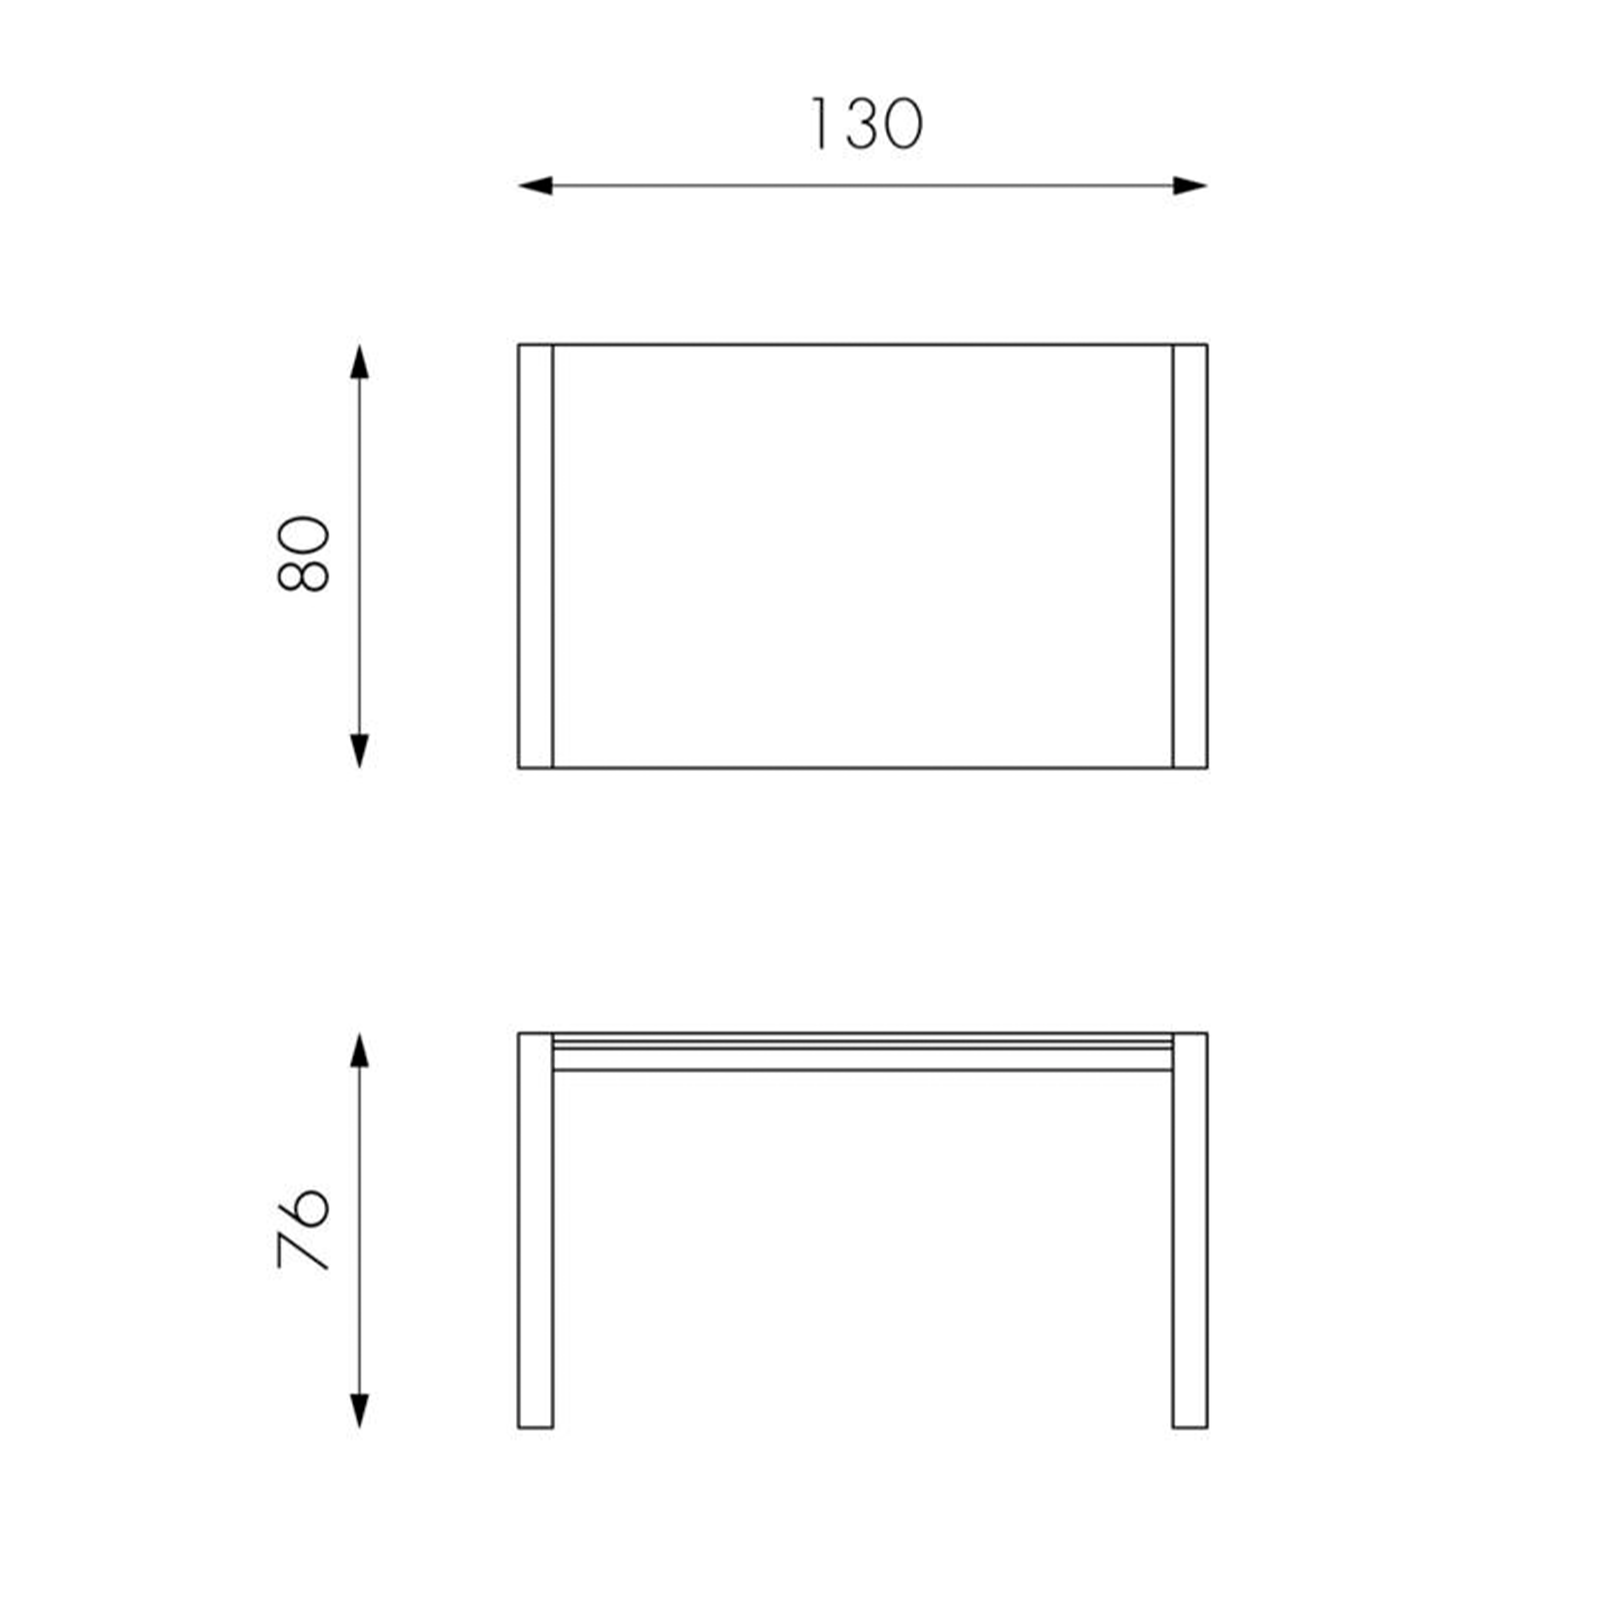 Table extensible "Pixel" en verre trempé avec structure métallique 122/182x80 cm 76h